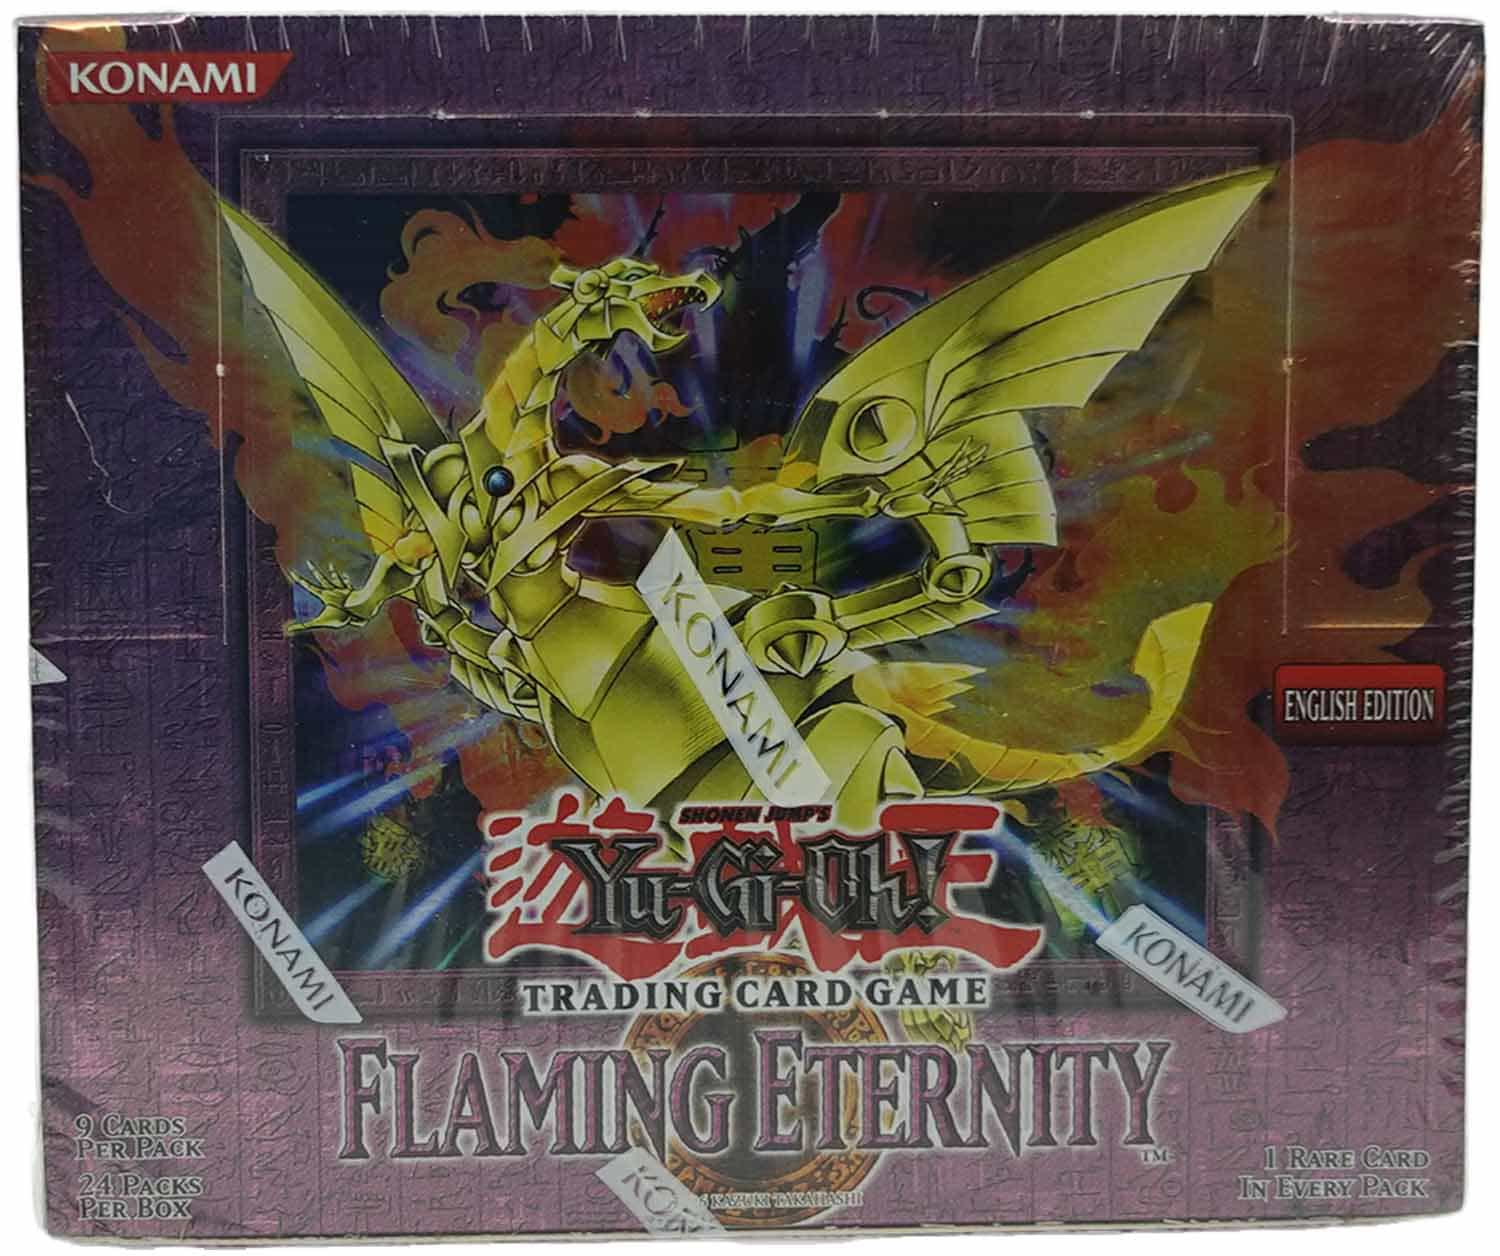 Flaming Eternity Booster Display (Sealed/OVP) - Yu-Gi-Oh! - EN